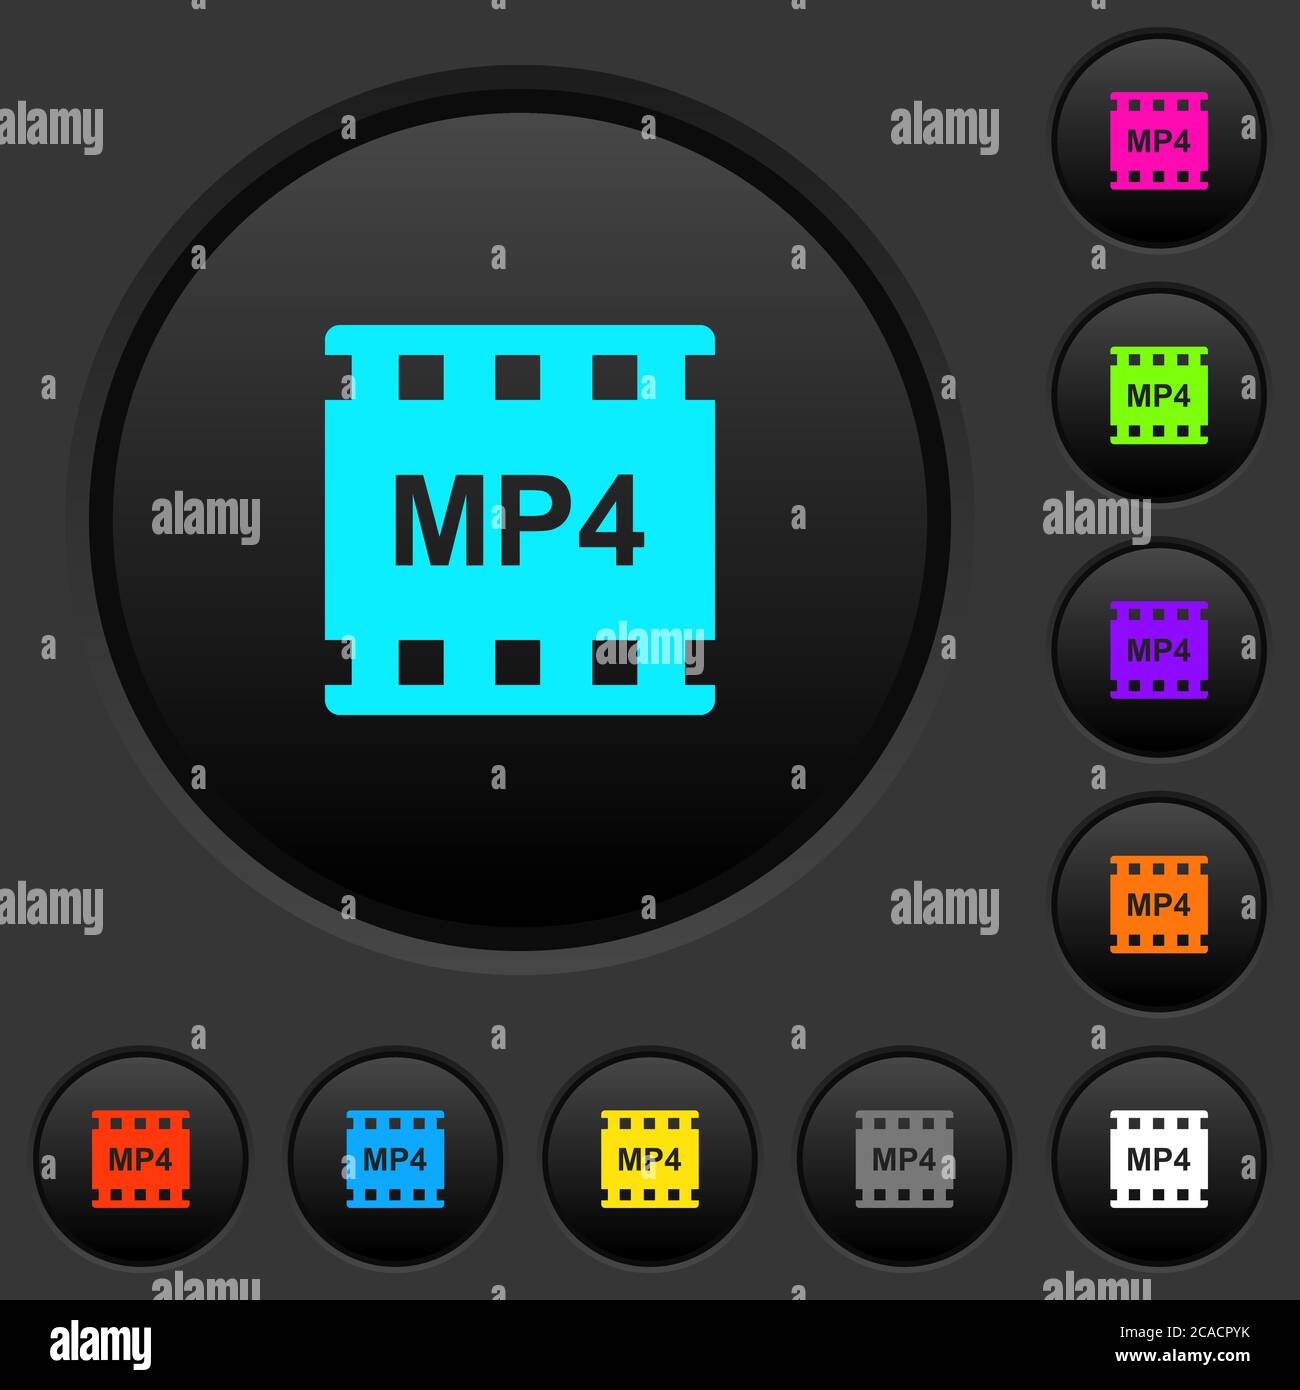 boutons-poussoirs sombres au format de film mp4 avec icônes de couleur vive sur fond gris foncé Illustration de Vecteur